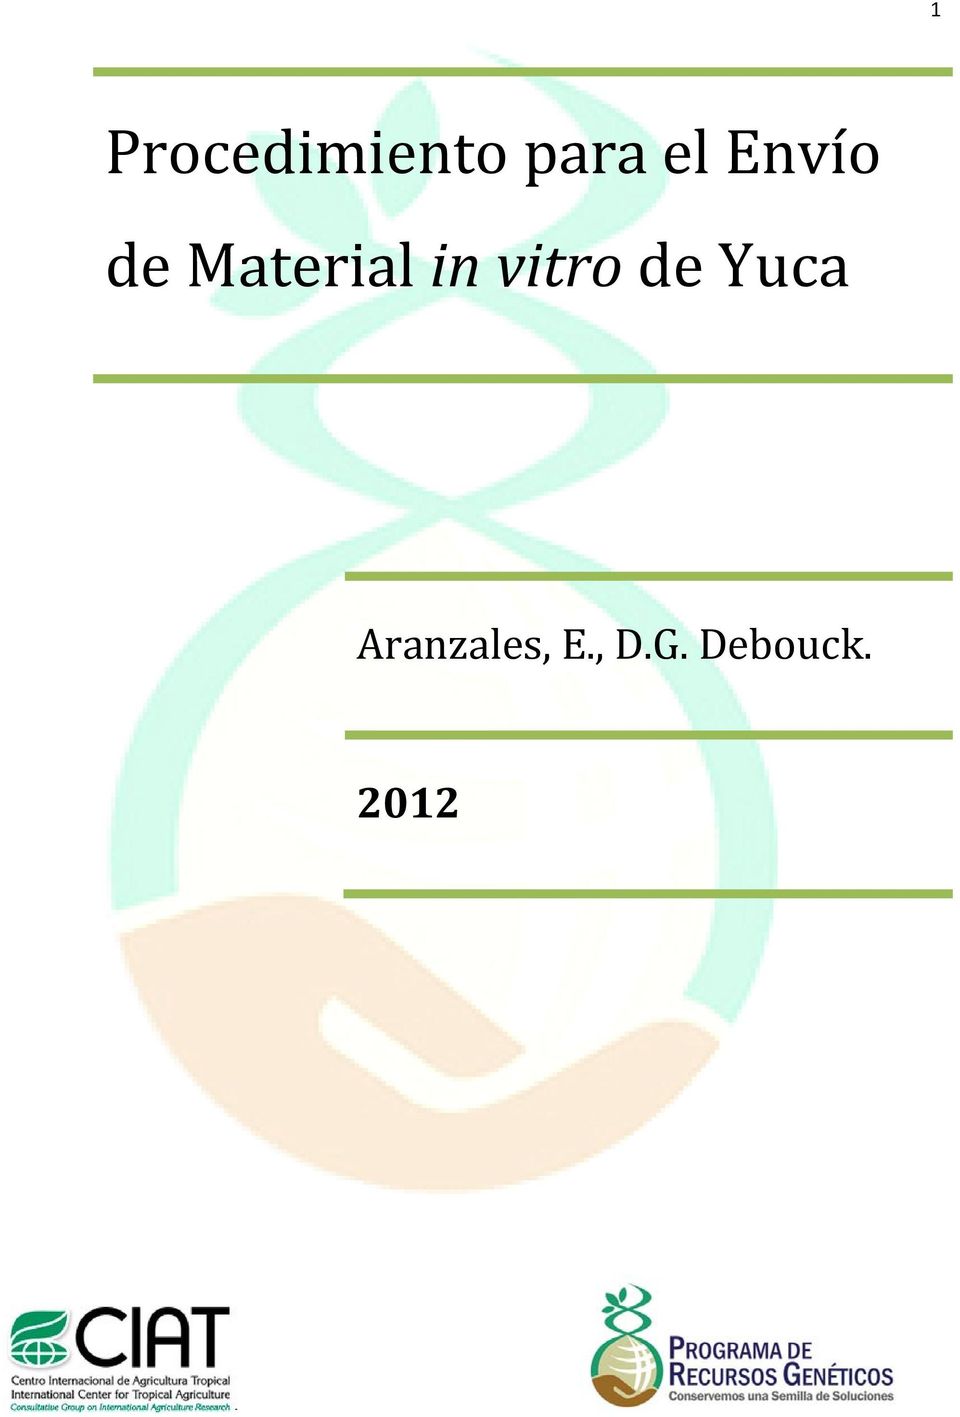 in vitro de Yuca